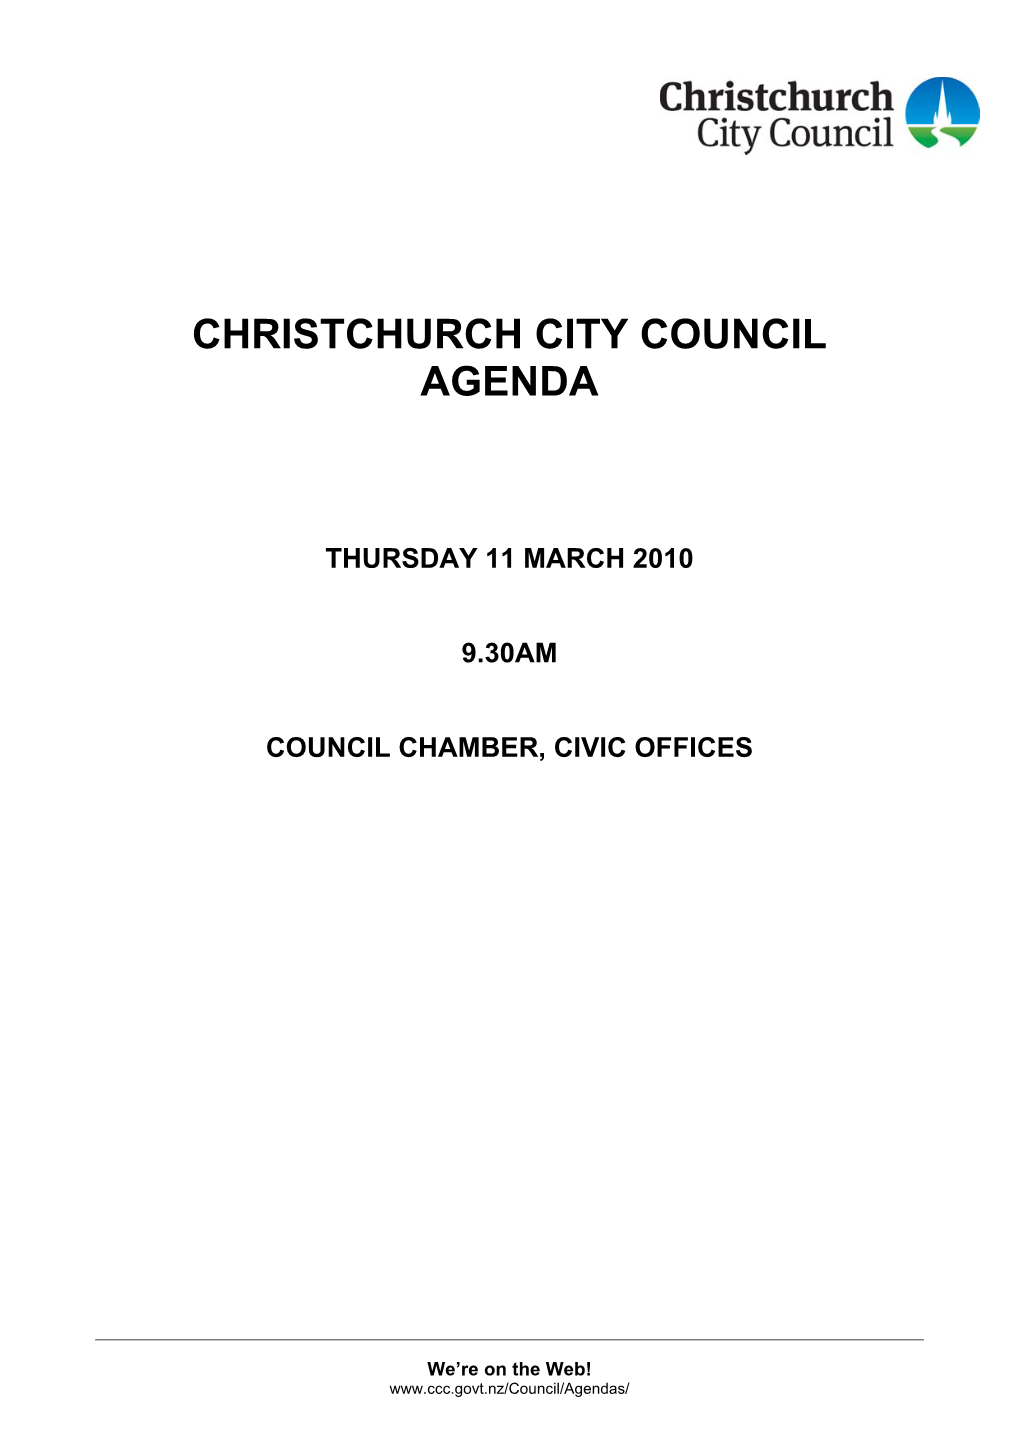 Council Agenda 11 March 2010